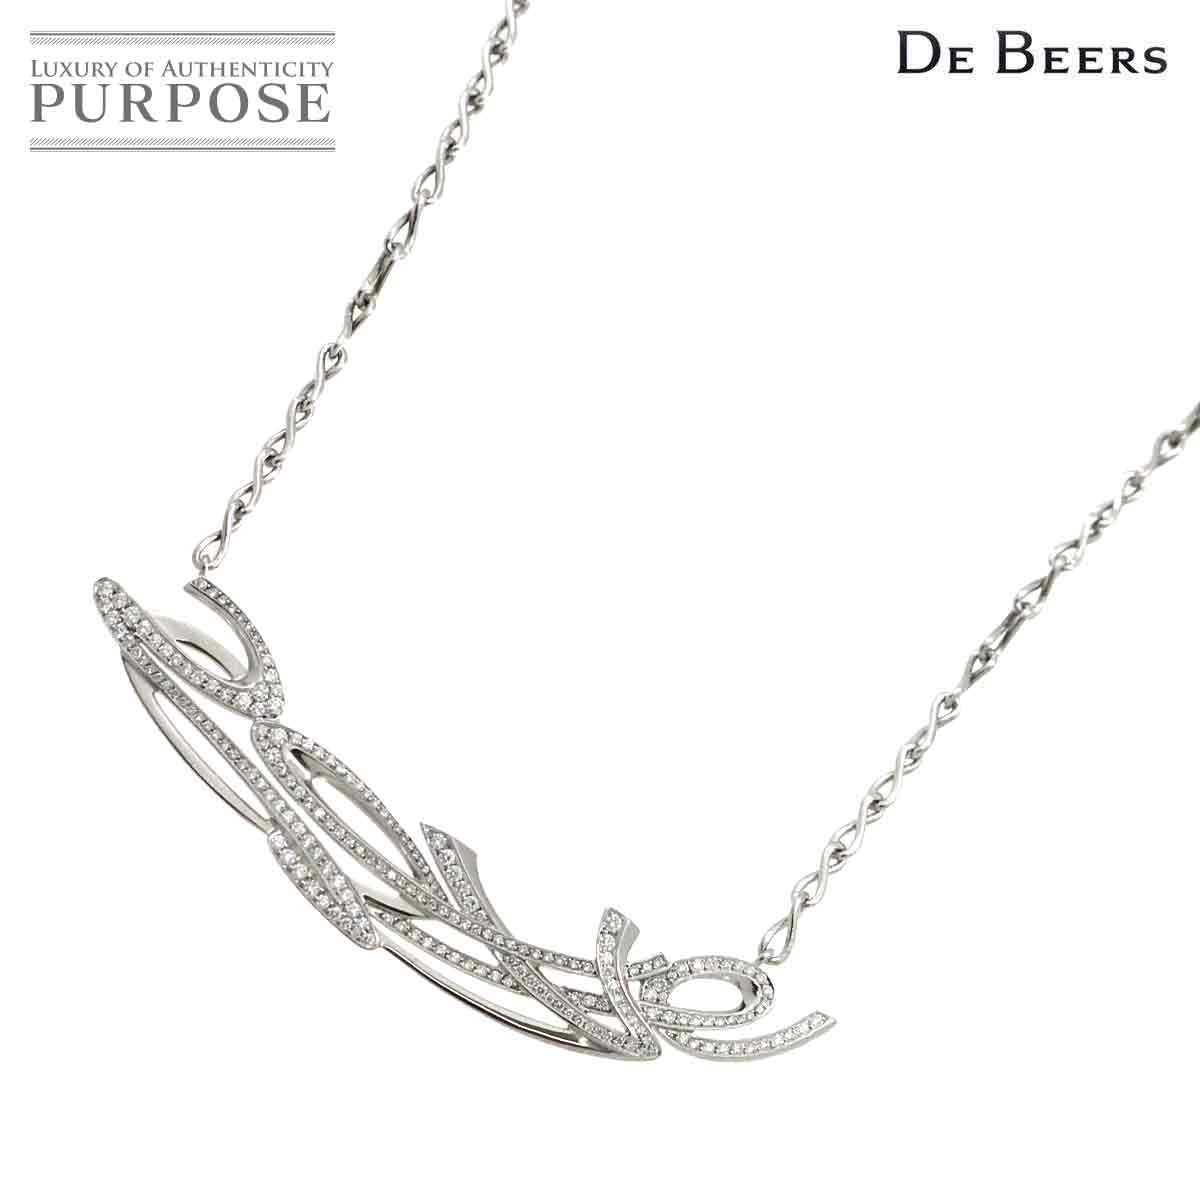 【新品同様】 デビアス DE BEERS ダイヤ ネックレス 42cm K18 WG ホワイトゴールド 750 Diamond Necklace【証明書付き】【中古】